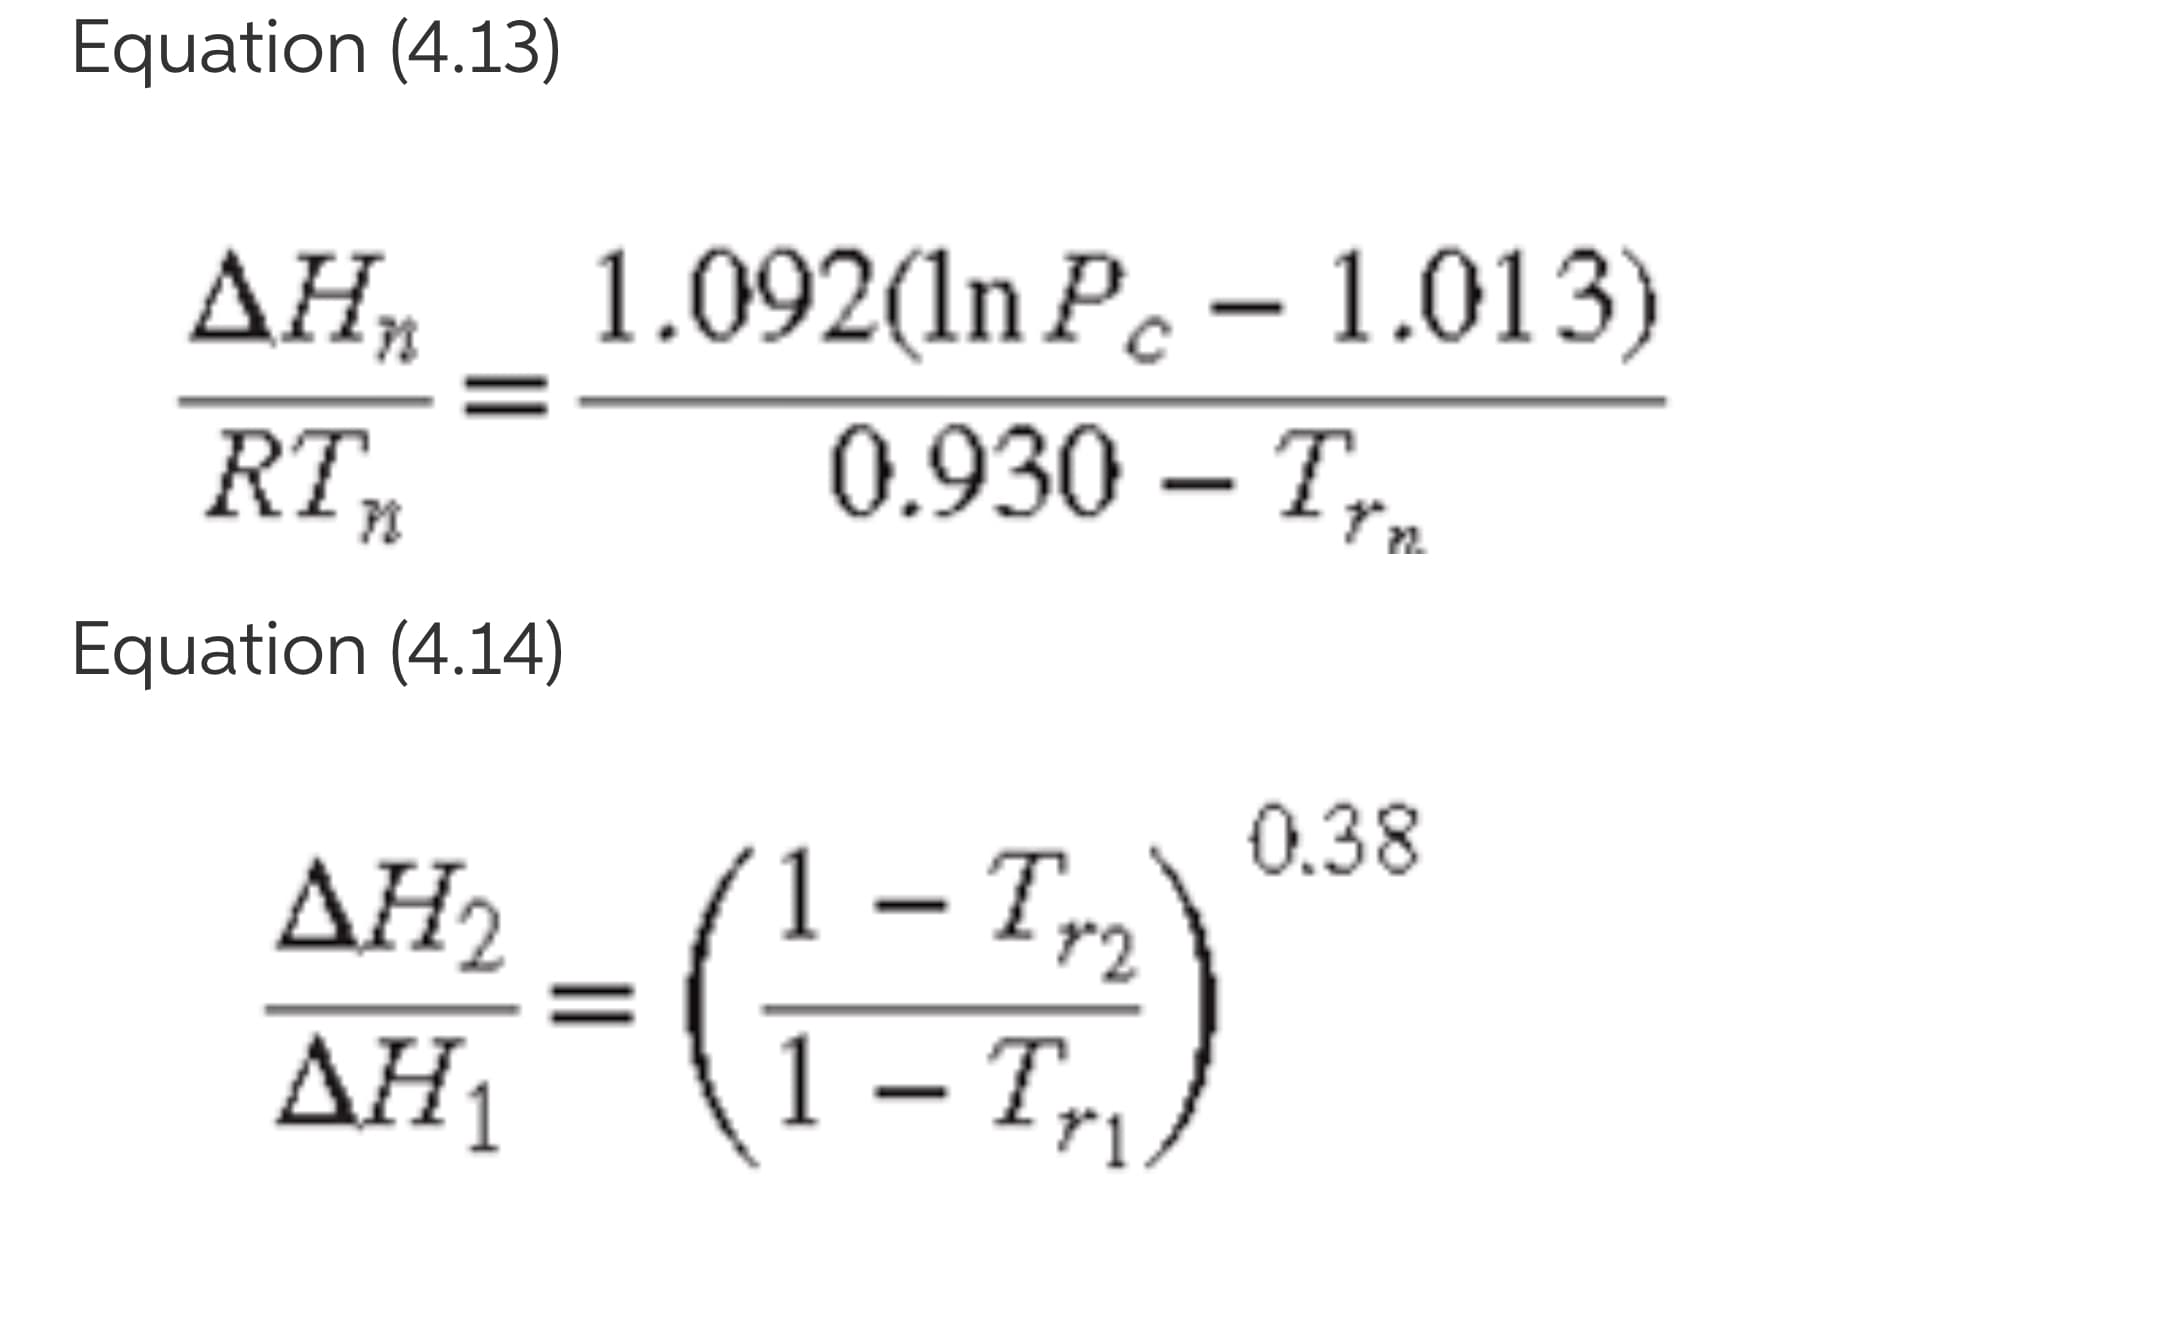 Equation (4.13)
ДН, 1.092(n Р. - 1.013)
0.930 – T,.
RT,
Equation (4.14)
0.38
ΔΗ
1 – Tr2
Tyg
ΔΗ1
1 – Tr,
